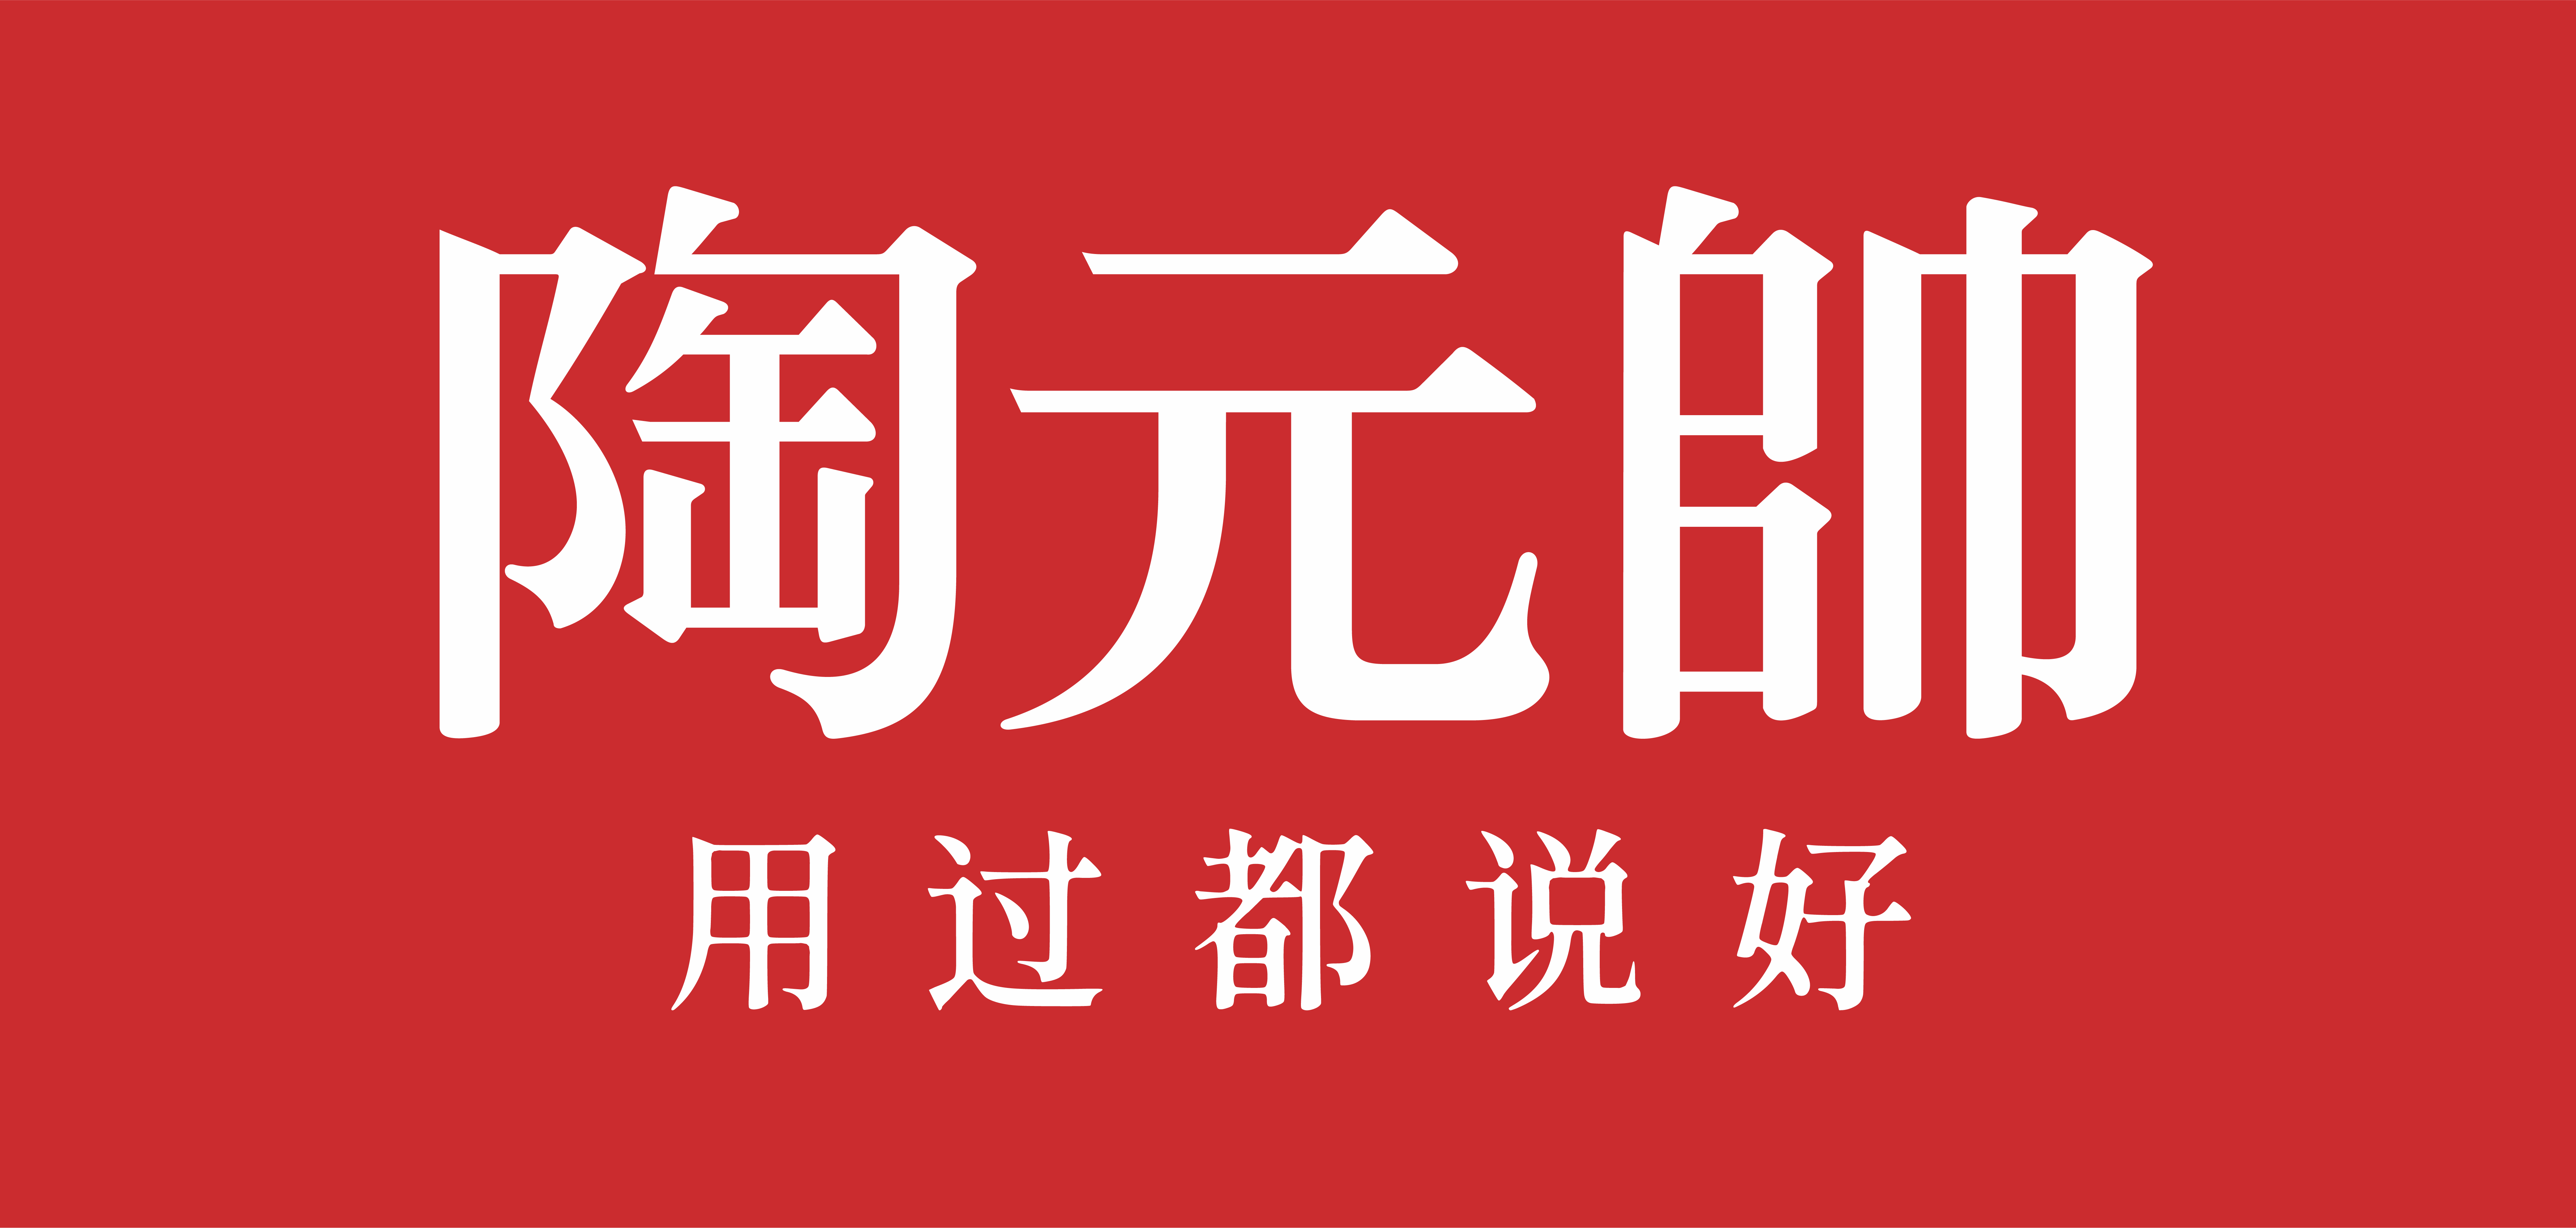 陶元帅瓷砖logo